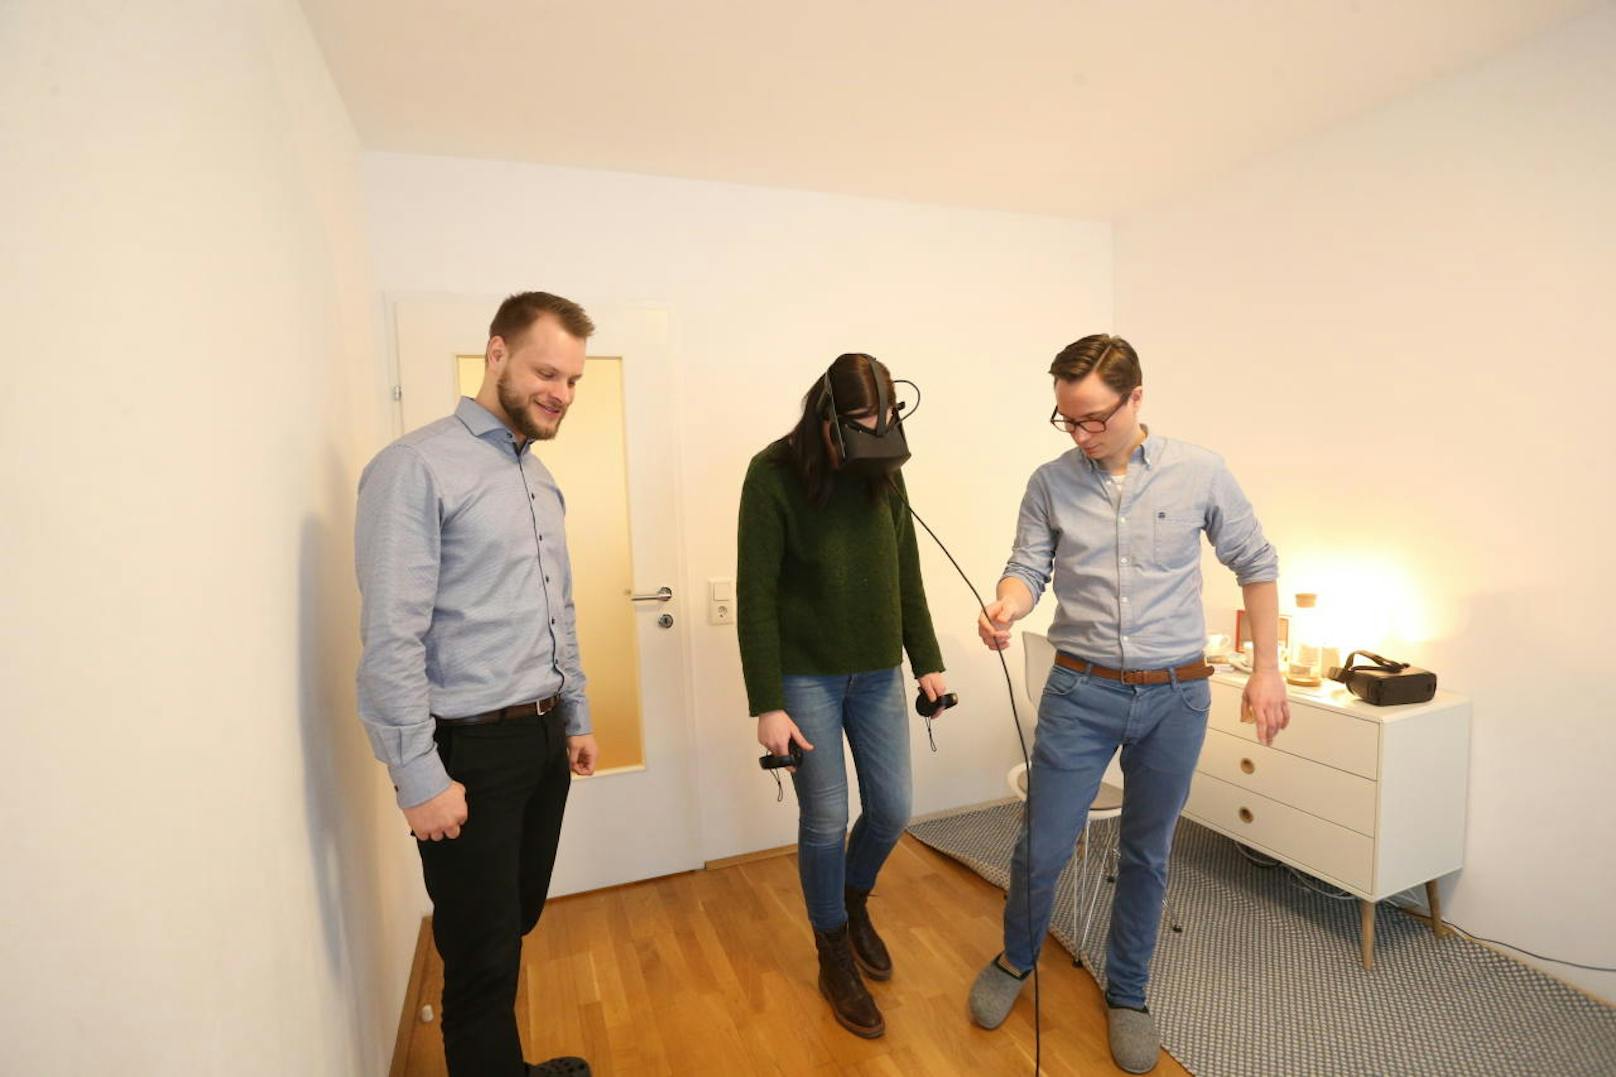 Mitten in der Wiener Innenstadt tauchen die Patienten mittels Virtual Reality-Brille und Controlern in die virtuellen Welten ein.